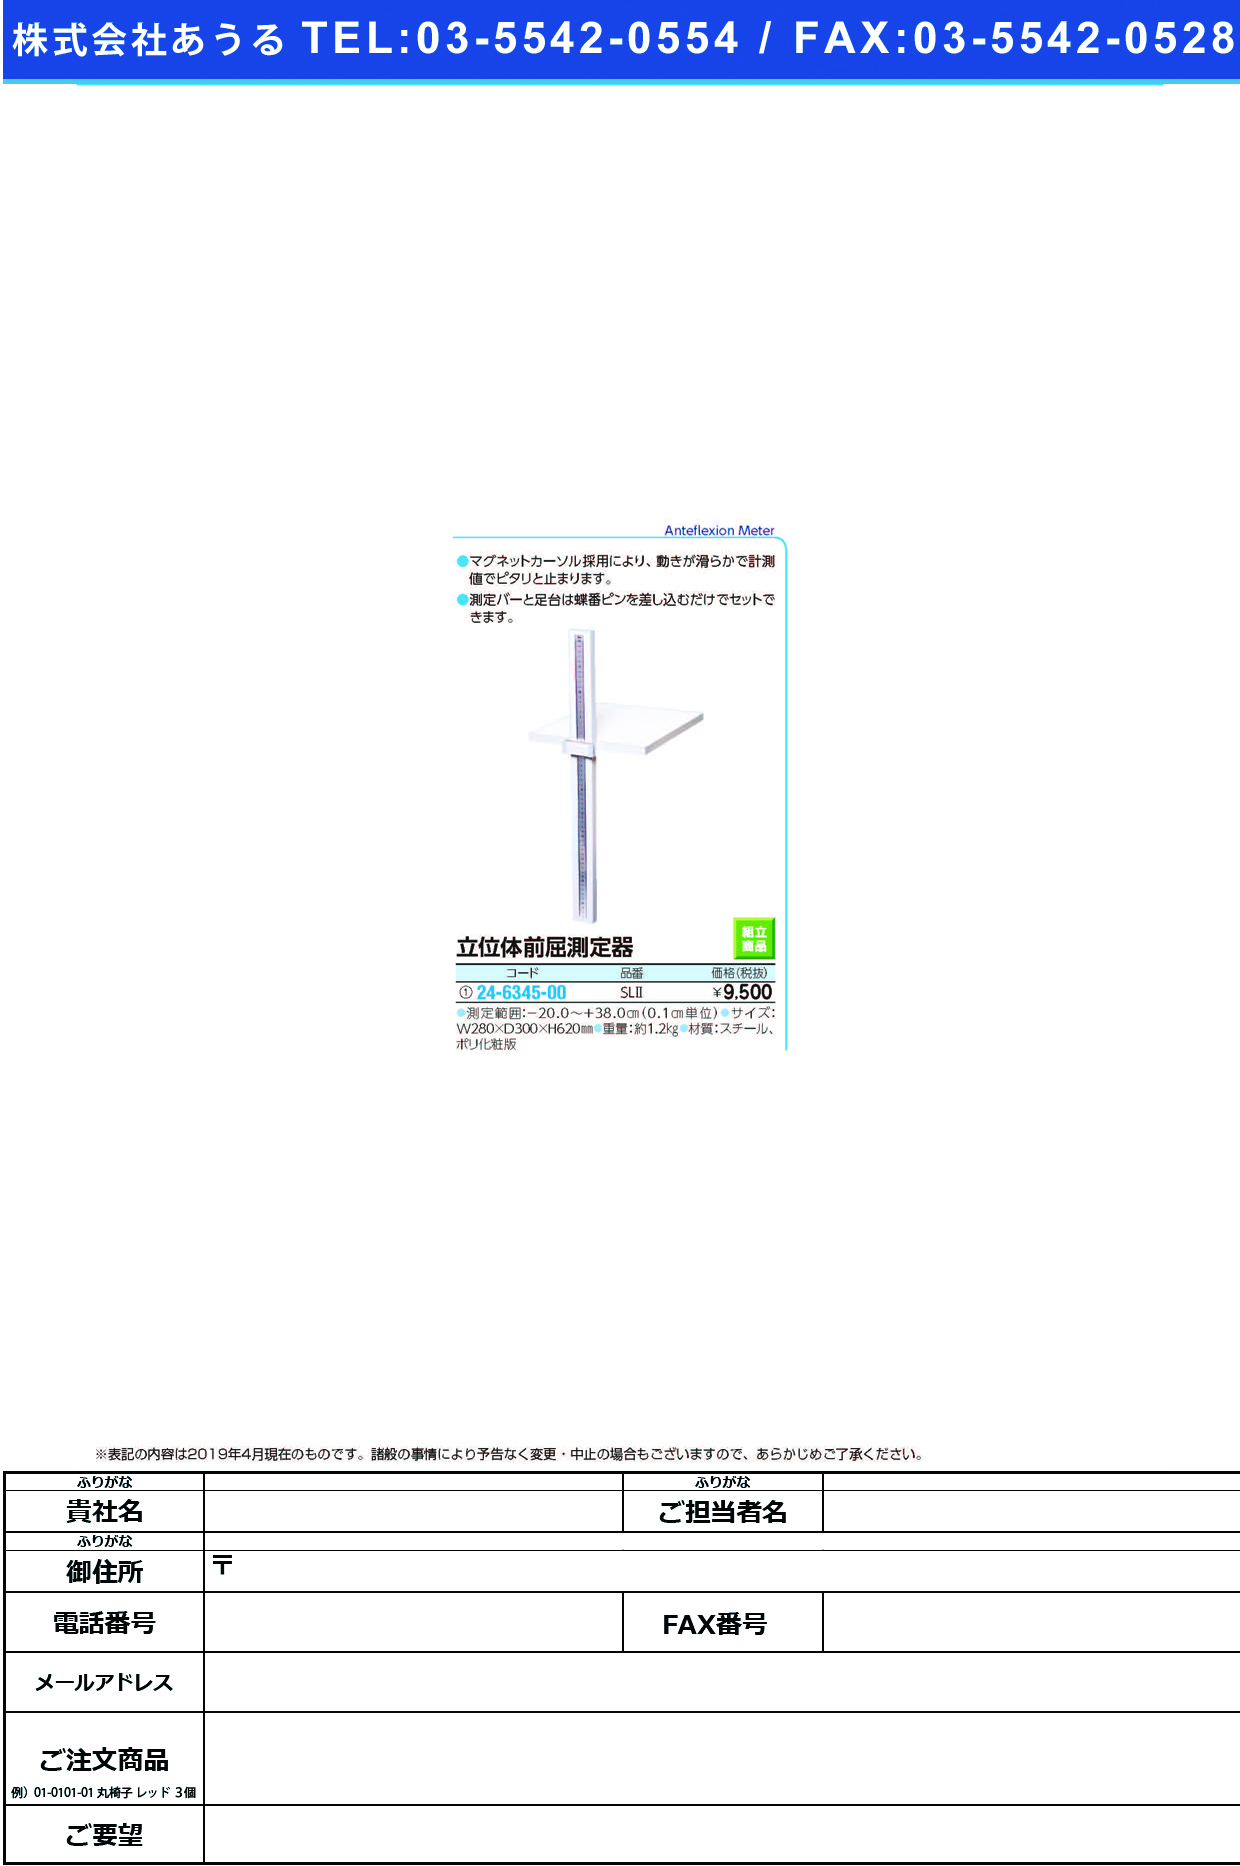 (24-6345-00)立位体前屈測定器 SL2 ﾘﾂｲﾀｲｾﾞﾝｸﾂｿｸﾃｲｷ【1台単位】【2019年カタログ商品】